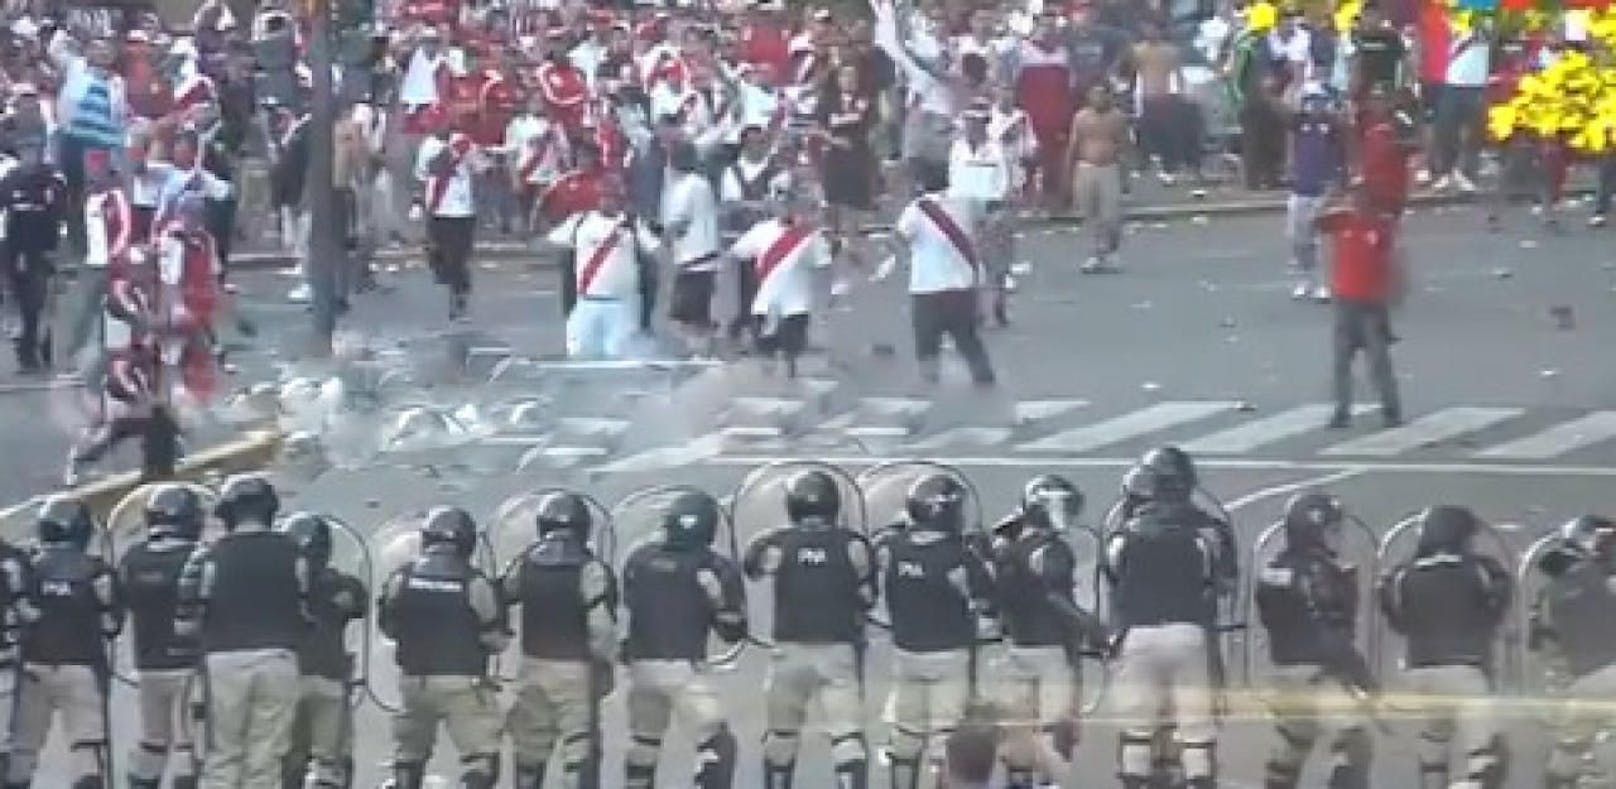 Polizei schießt mit Gummi auf randalierende Fans